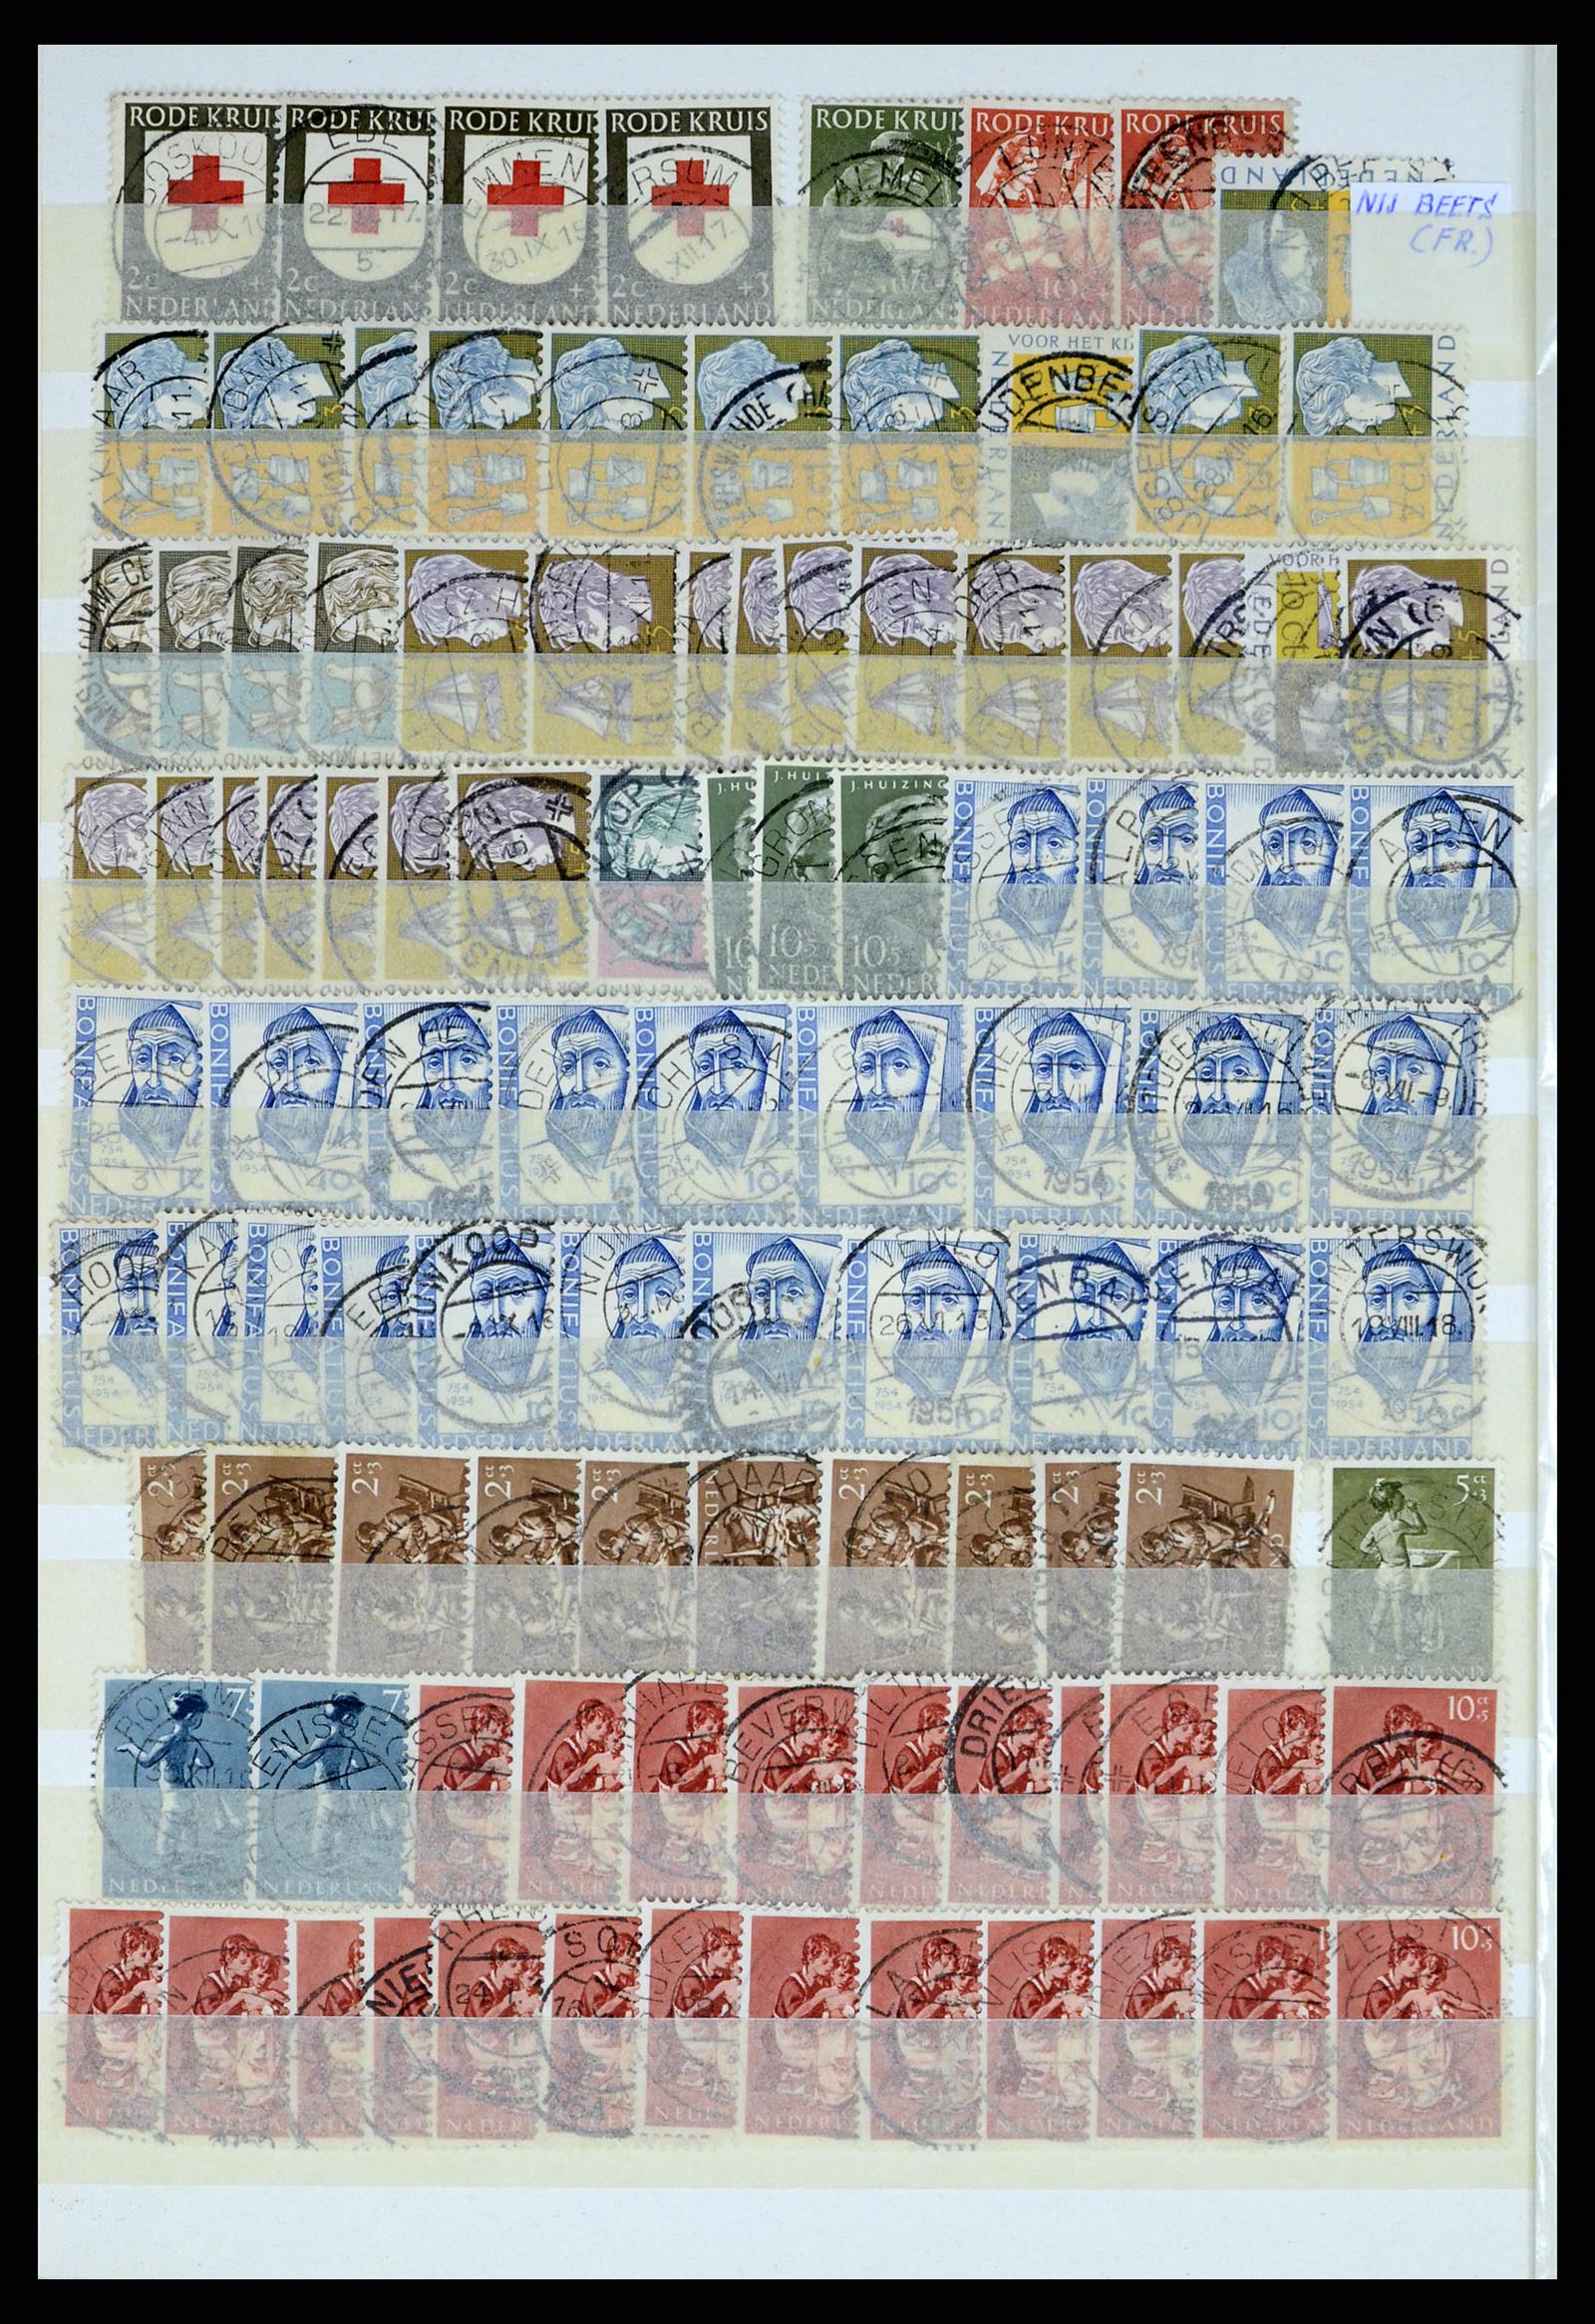 37424 048 - Postzegelverzameling 37424 Nederland kortebalk stempels.